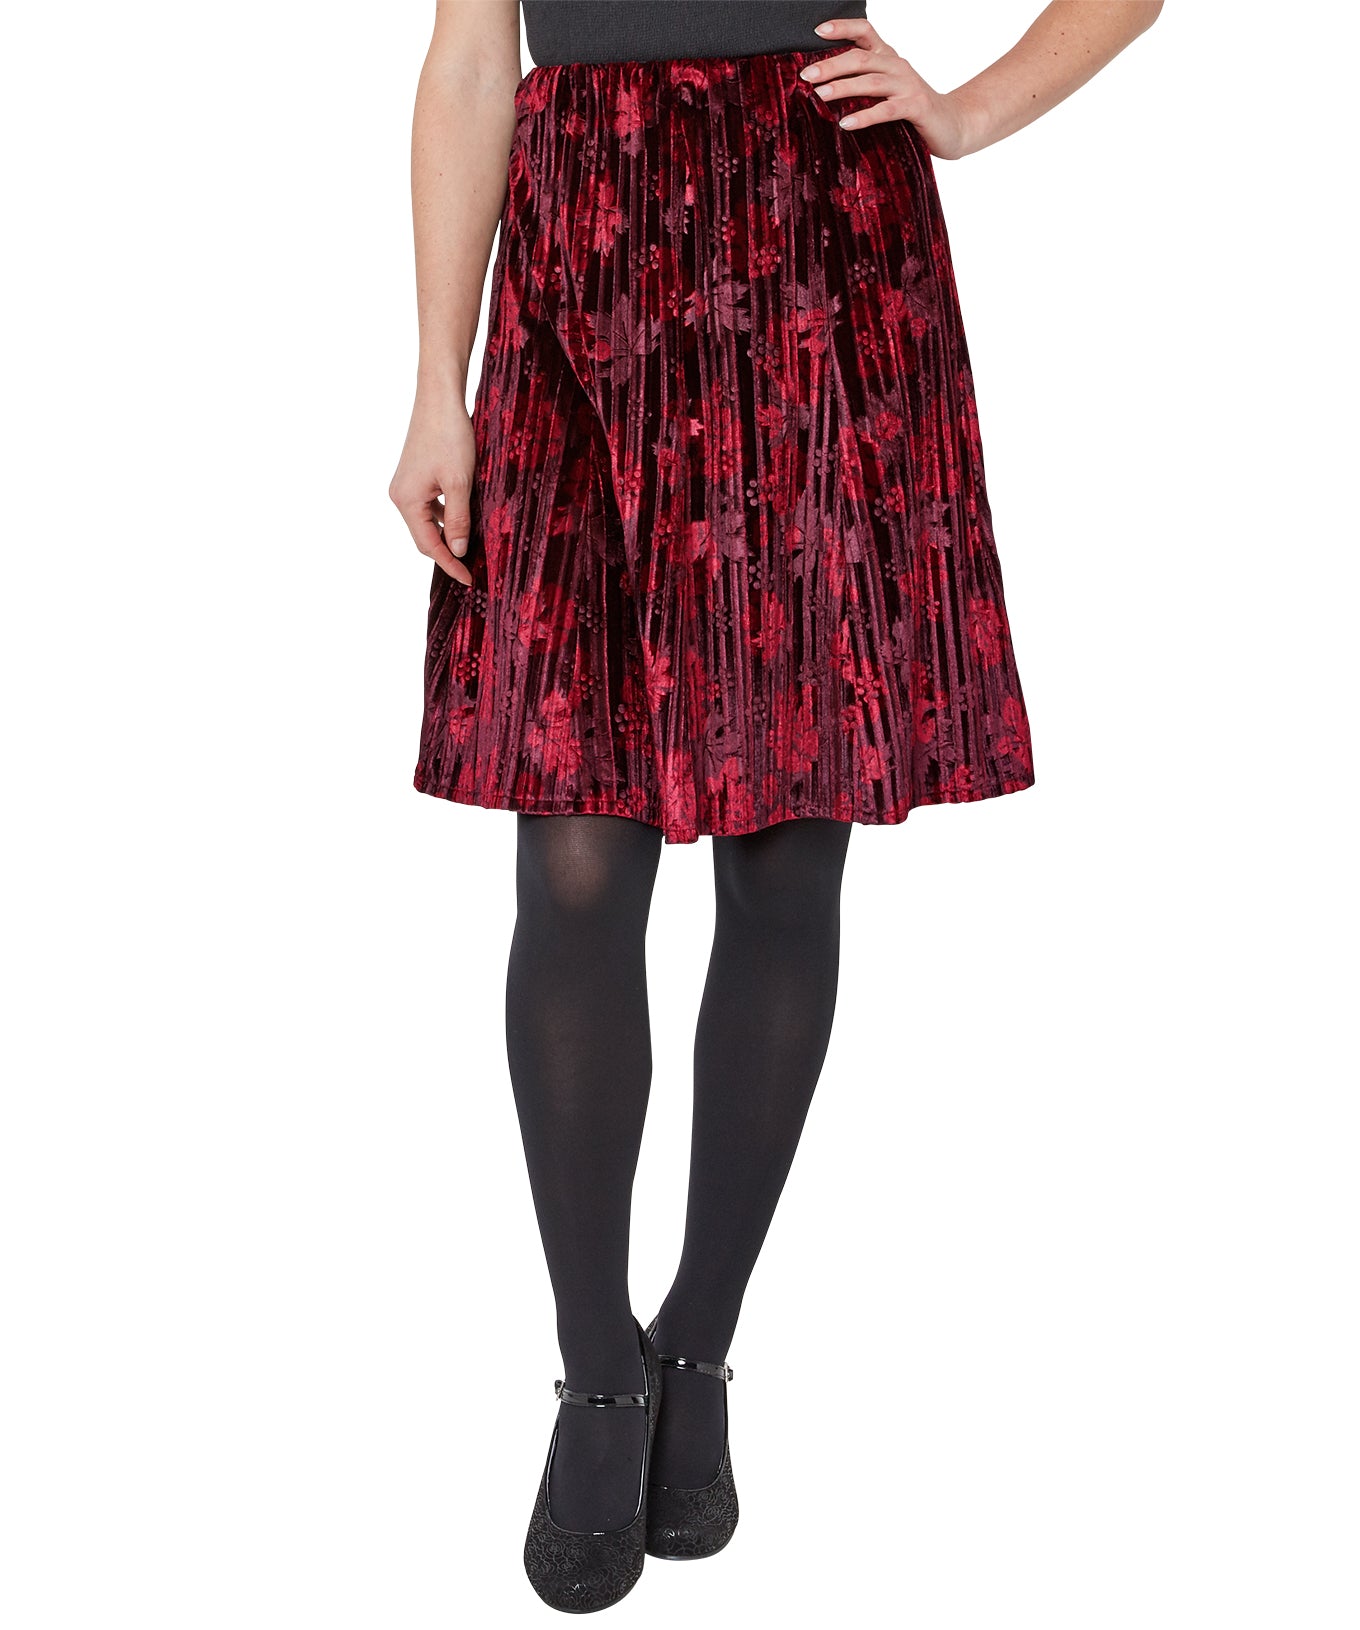 joe browns Stunning crushed velvet skirt!  £39.99 plus post